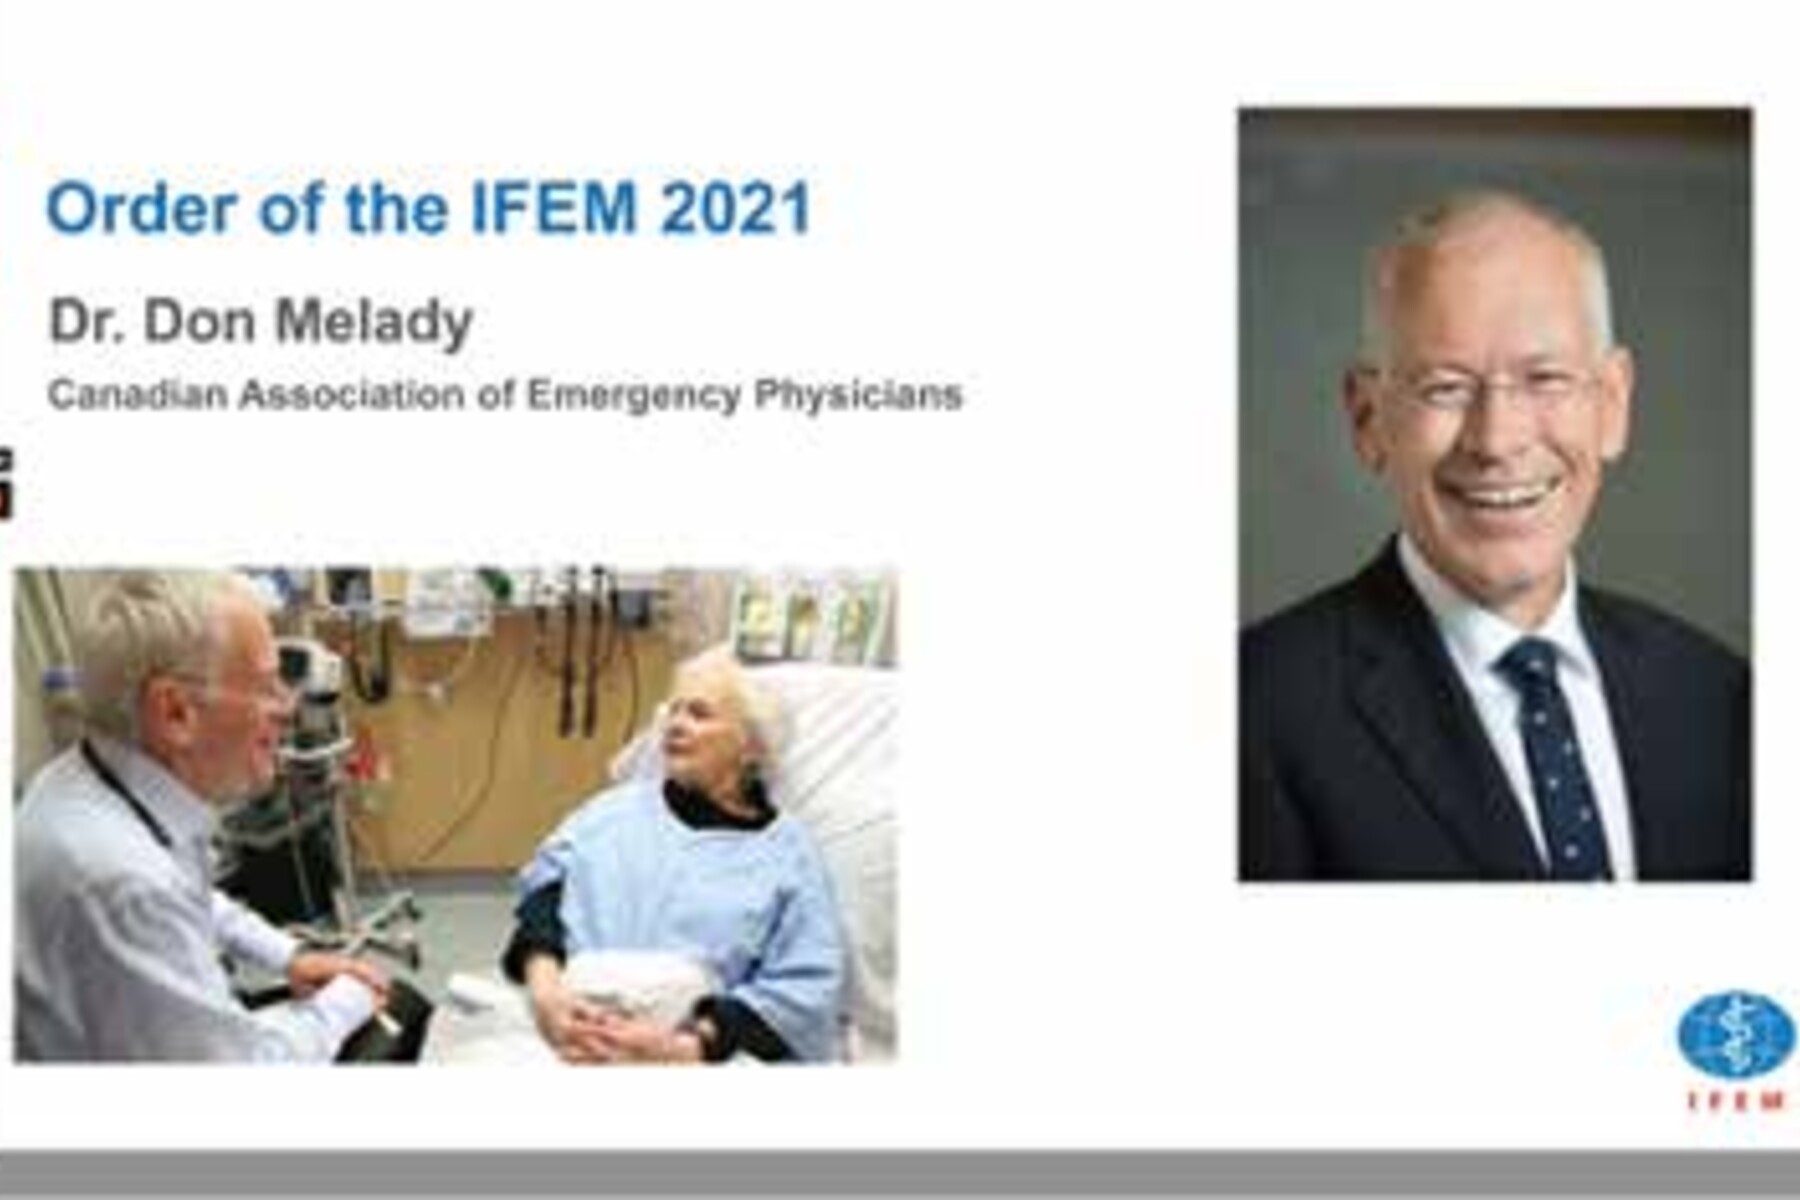 Image of Don Melady - Order of the IFEM 2021